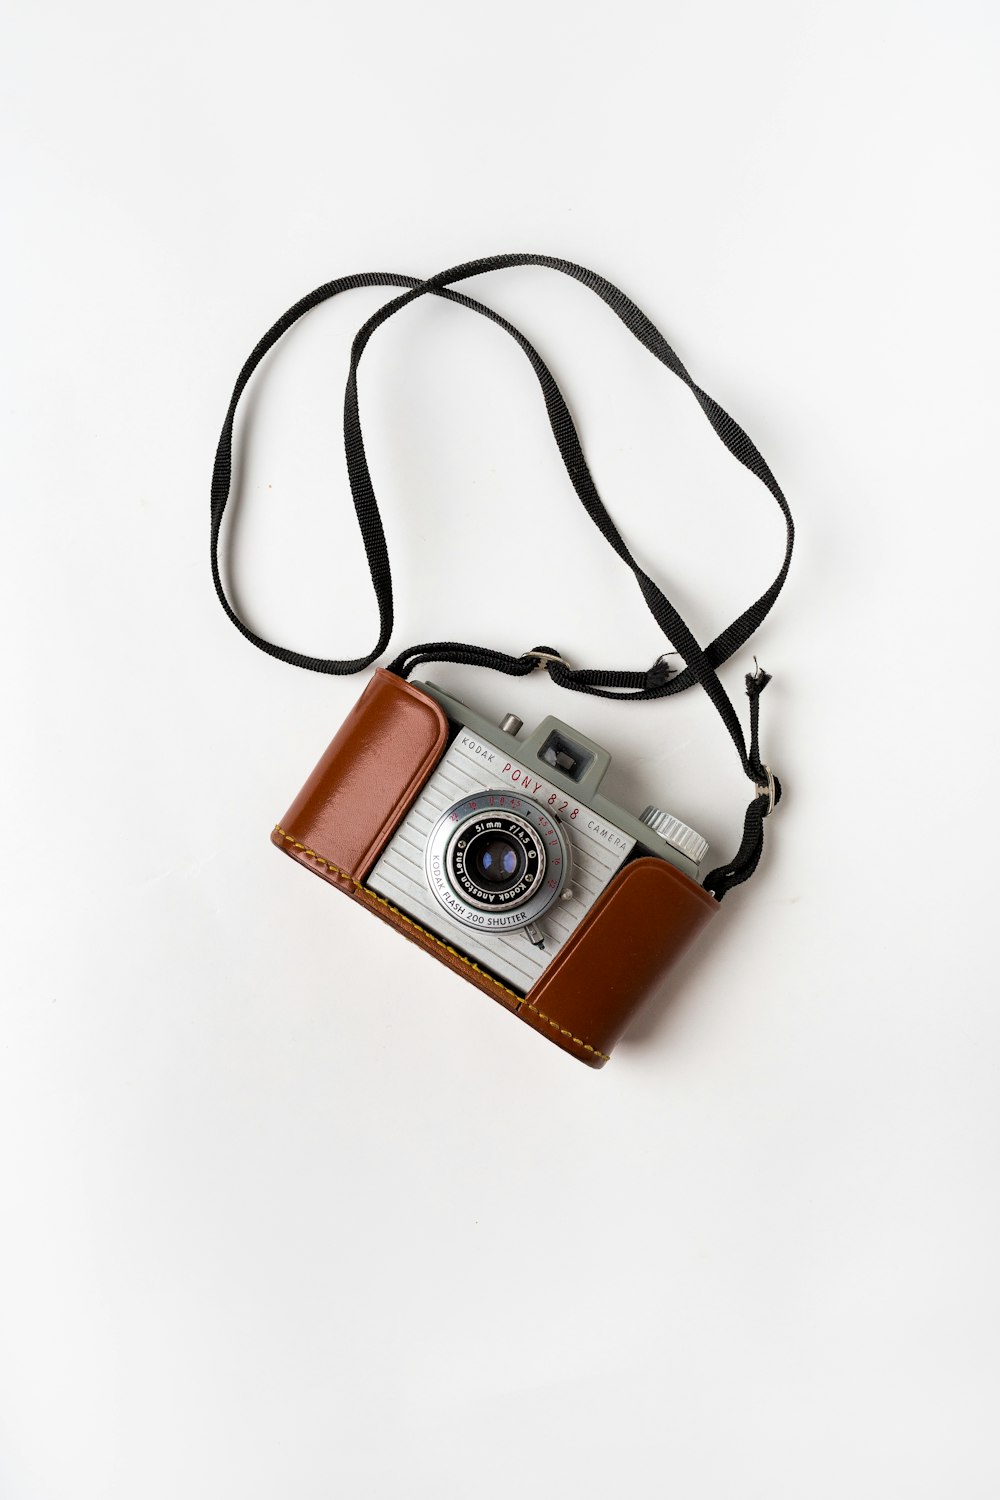 appareil photo reflex brun et gris sur surface blanche